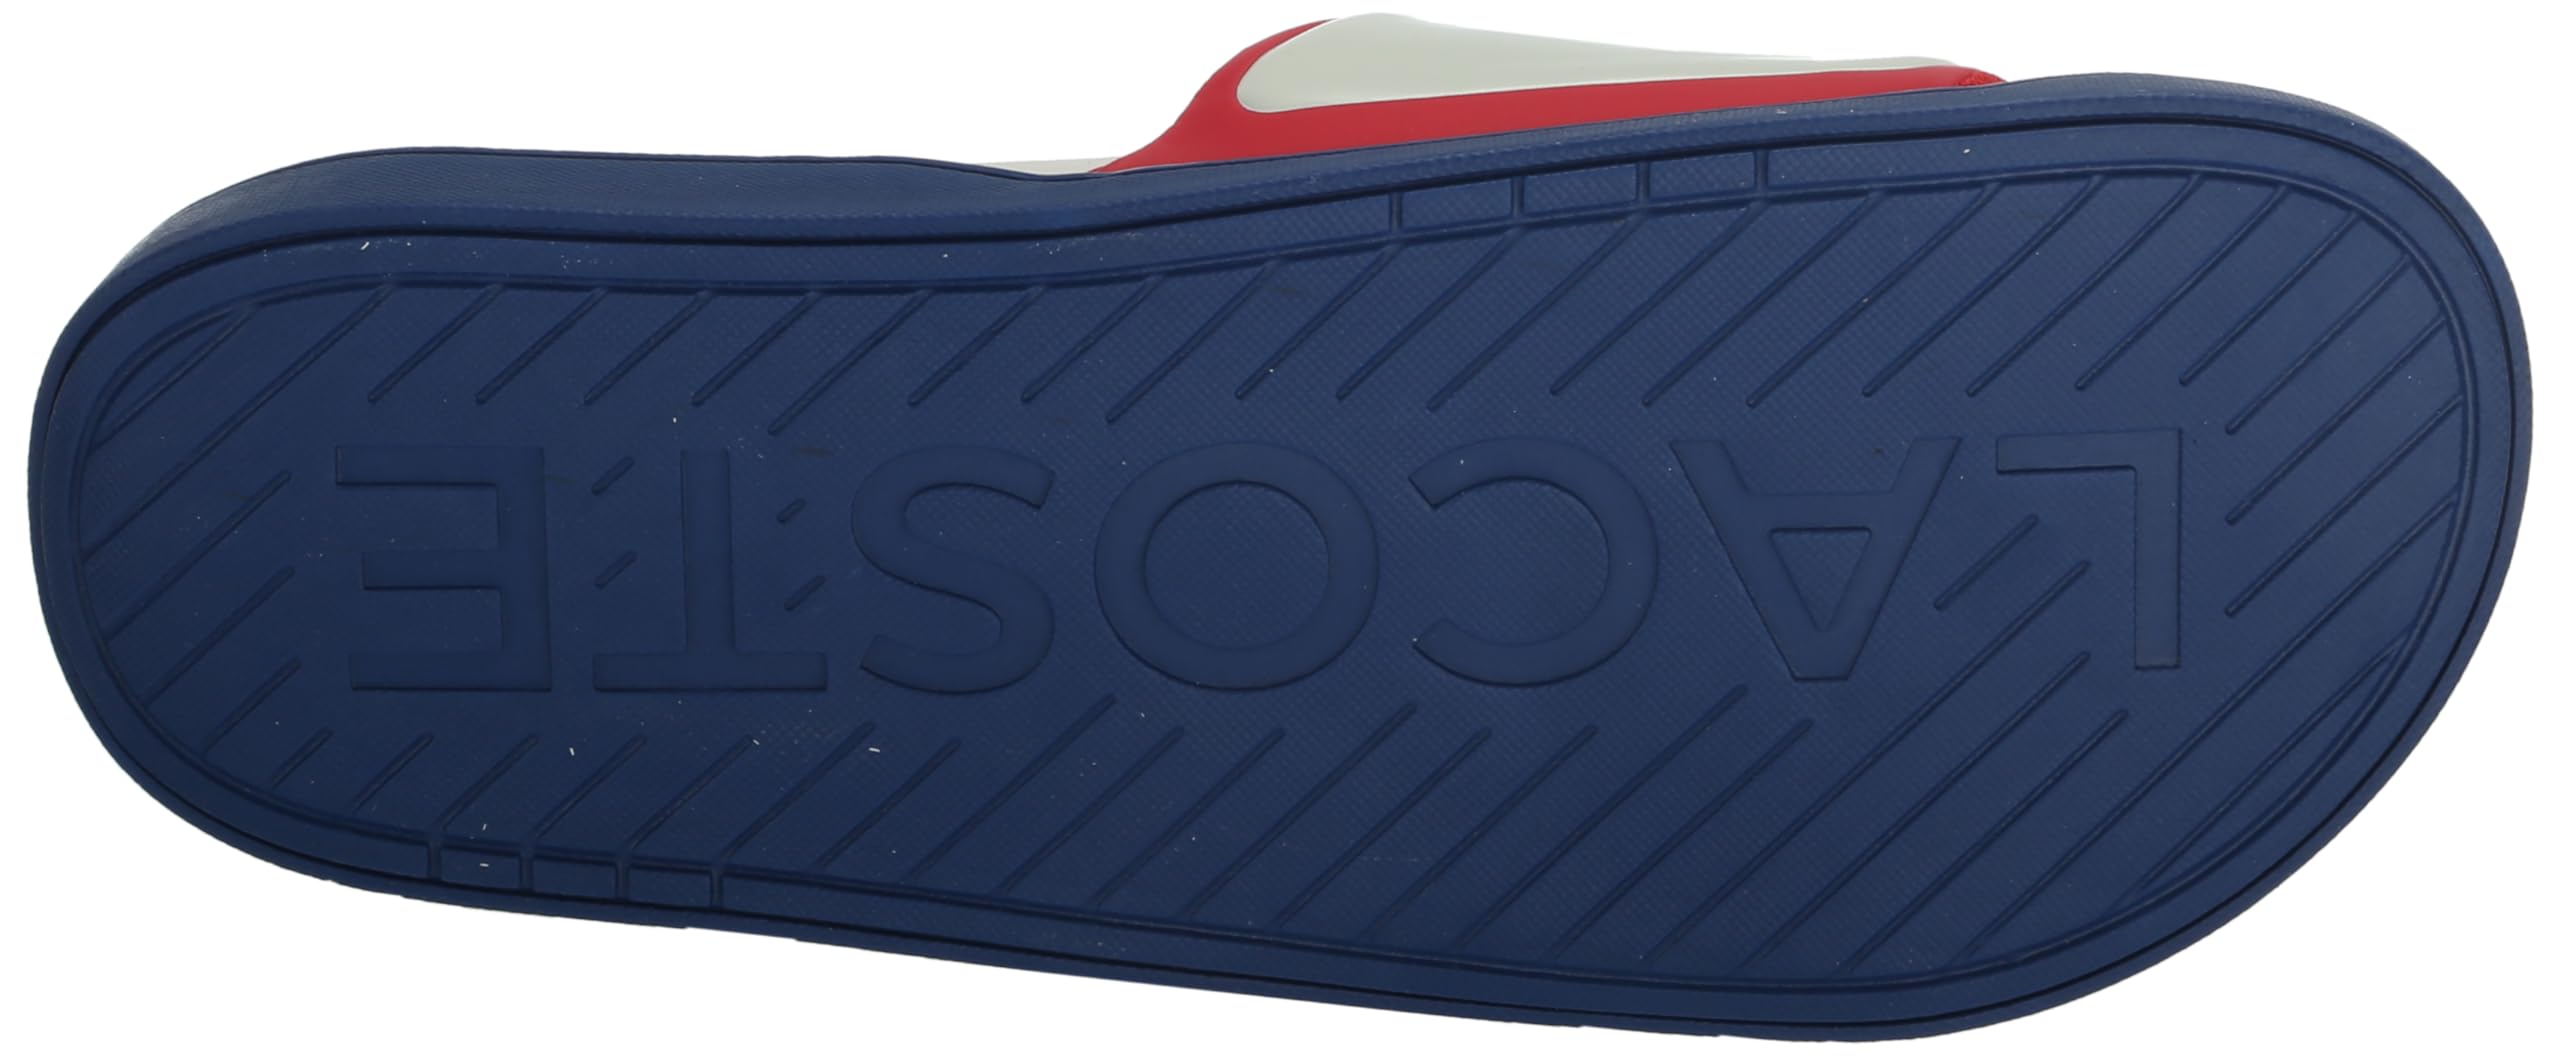 Lacoste Men's Serve Slide Dual 1241cma Sandal